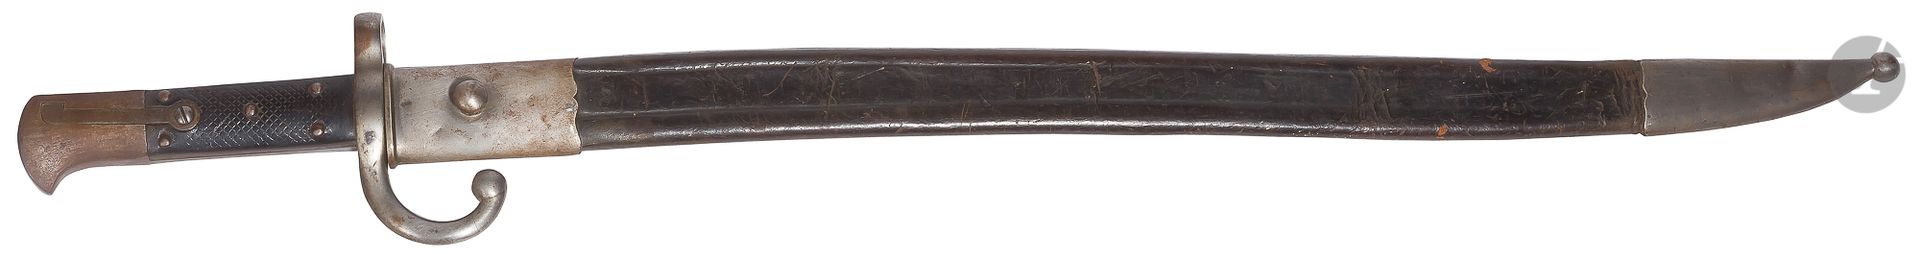 Null Bayoneta turca de fabricación americana modelo 1874 para fusil Peabody Mart&hellip;